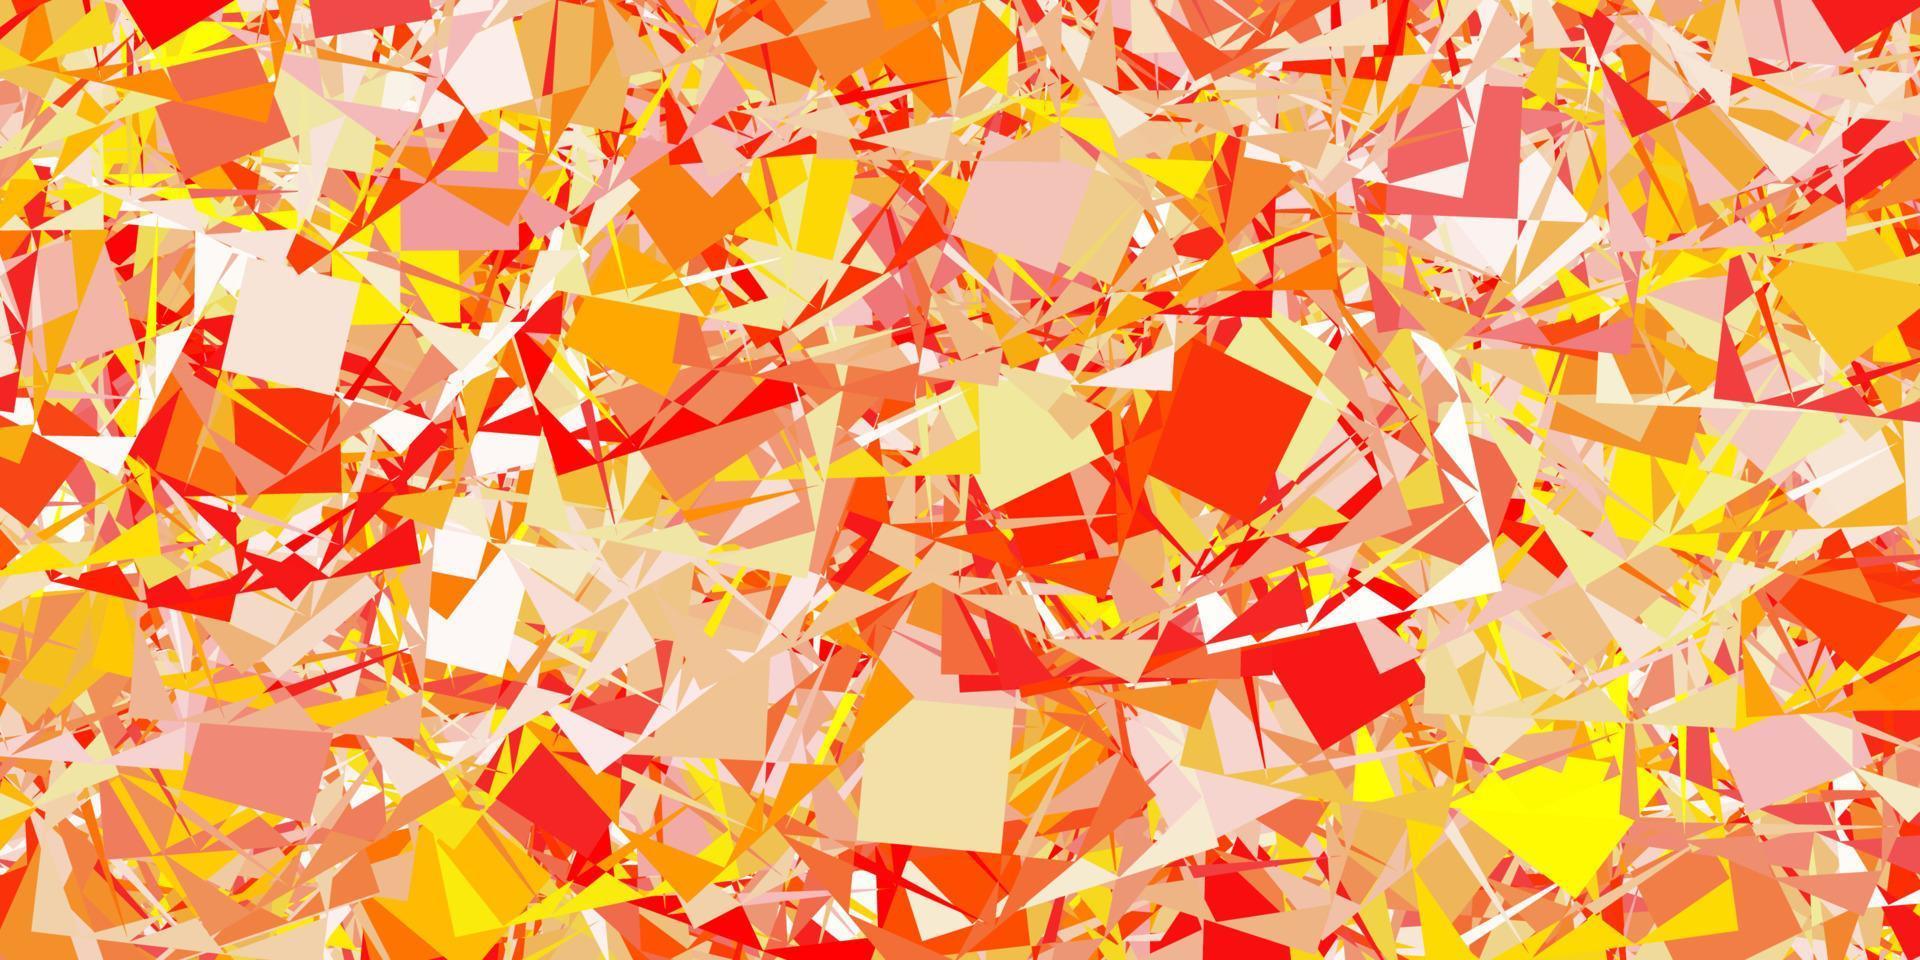 layout de vetor vermelho e amarelo claro com formas triangulares.